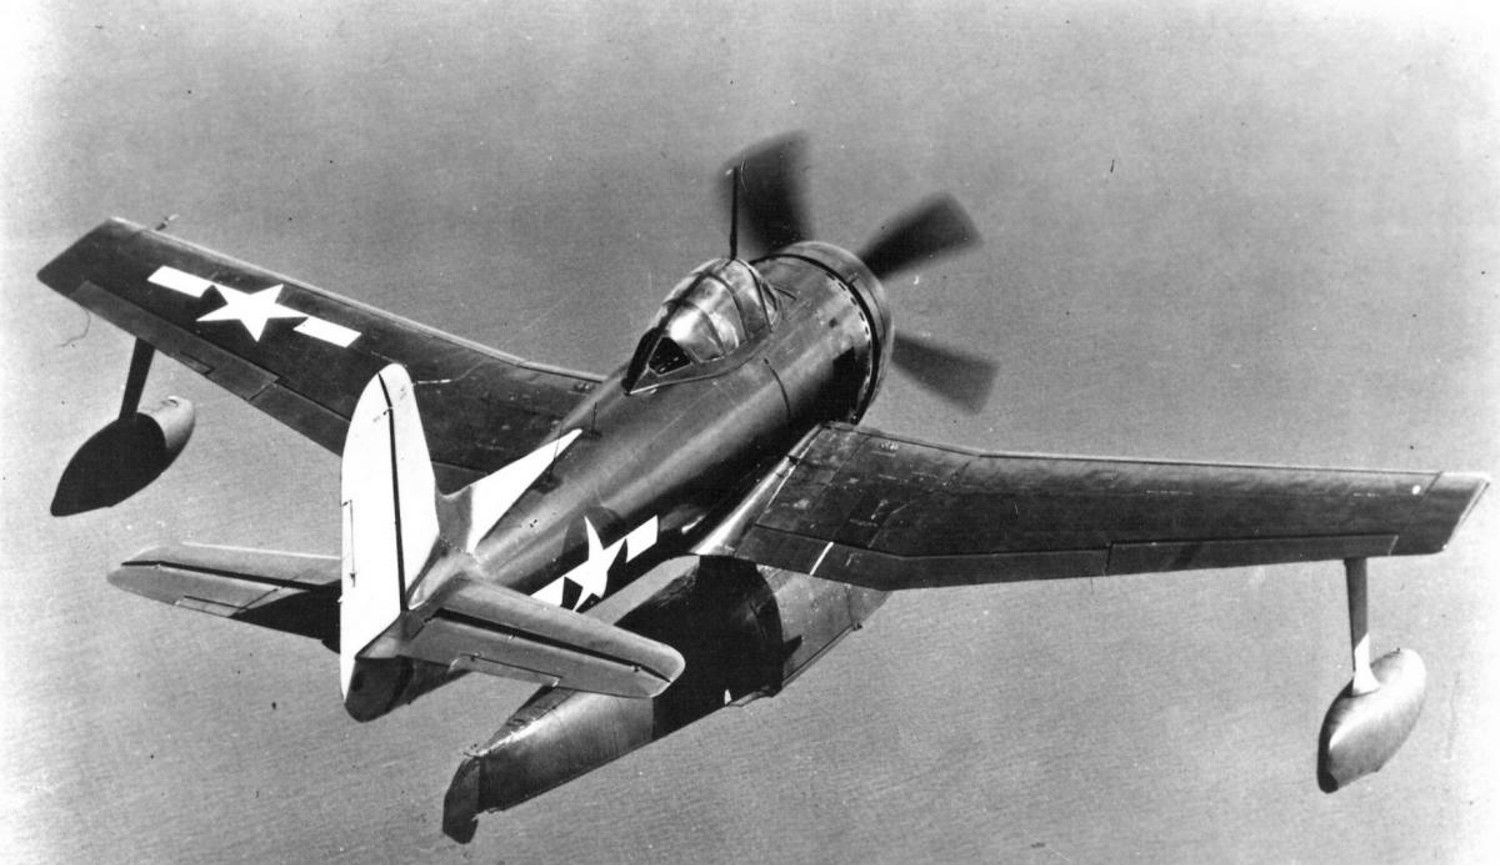 Curtiss_SC-1_Seahawk_